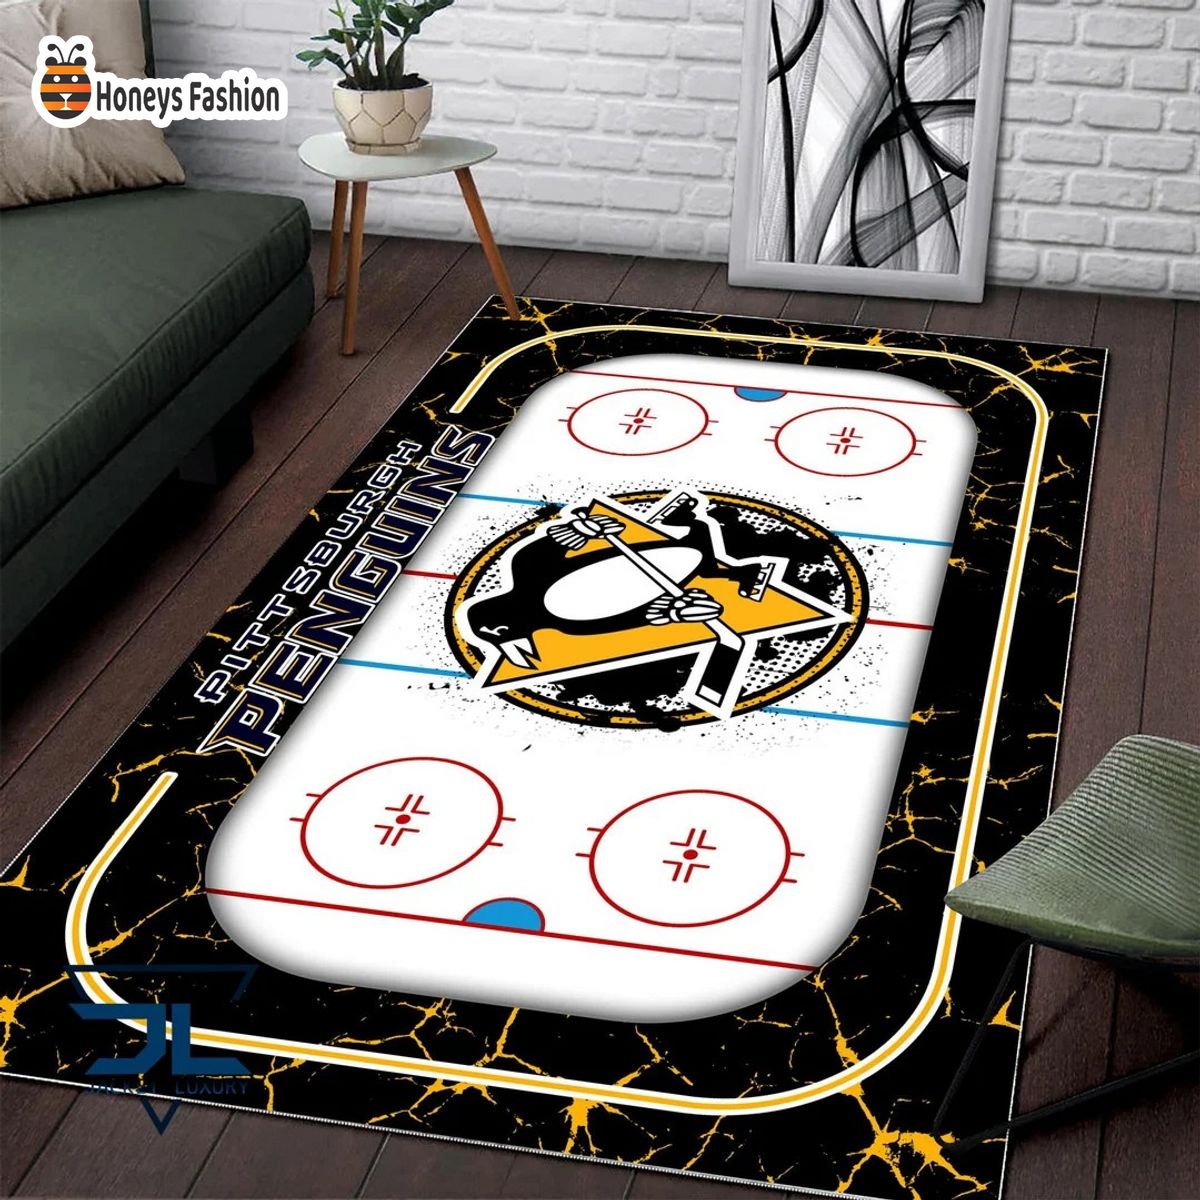 Pittsburgh Penguins NHL Rug Carpet